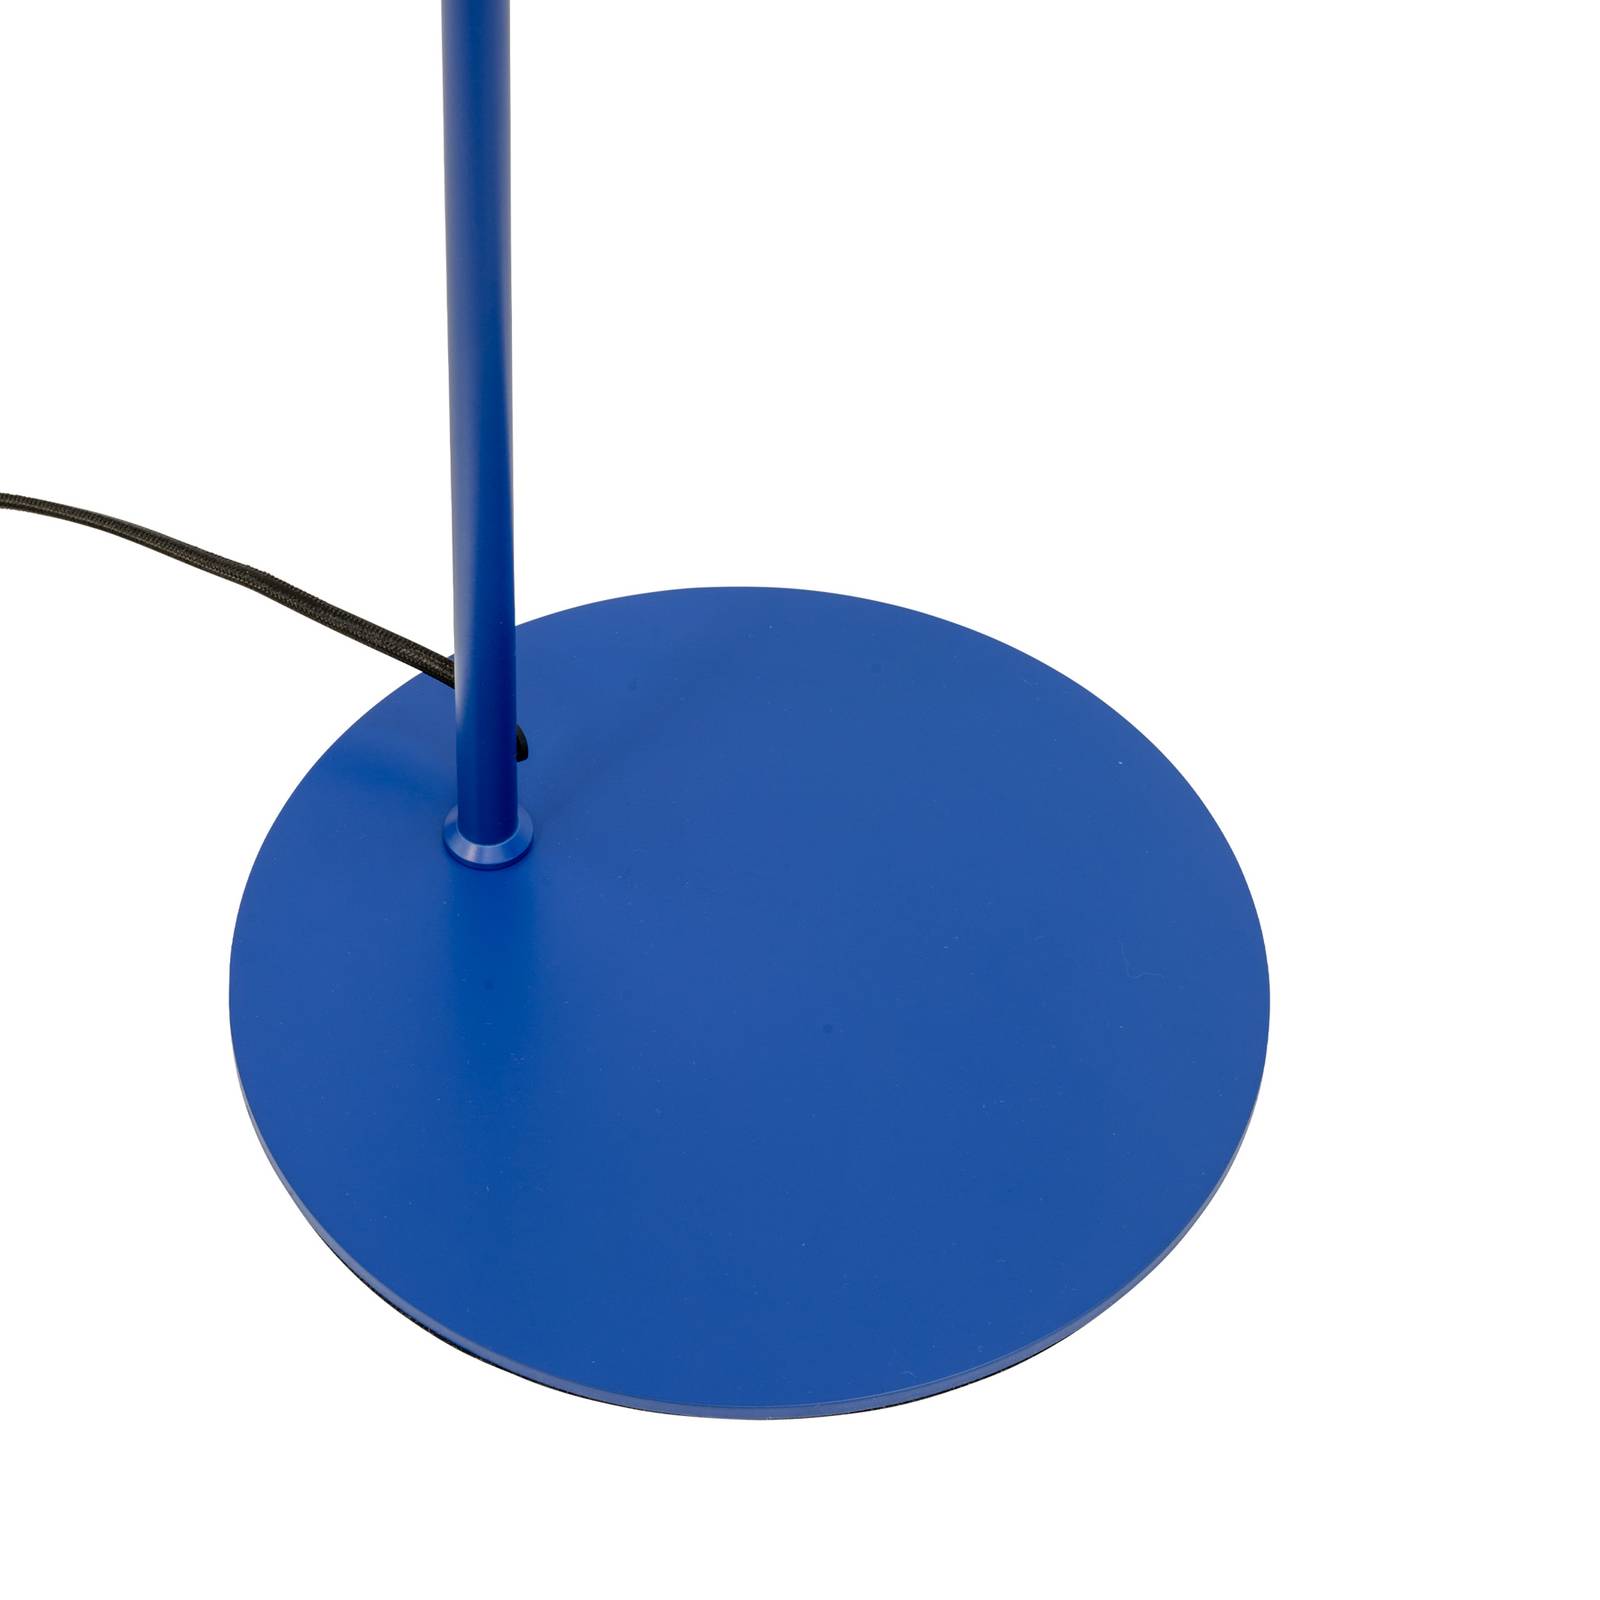 Dyberg Larsen Cale lampe sur pied, bleu foncé